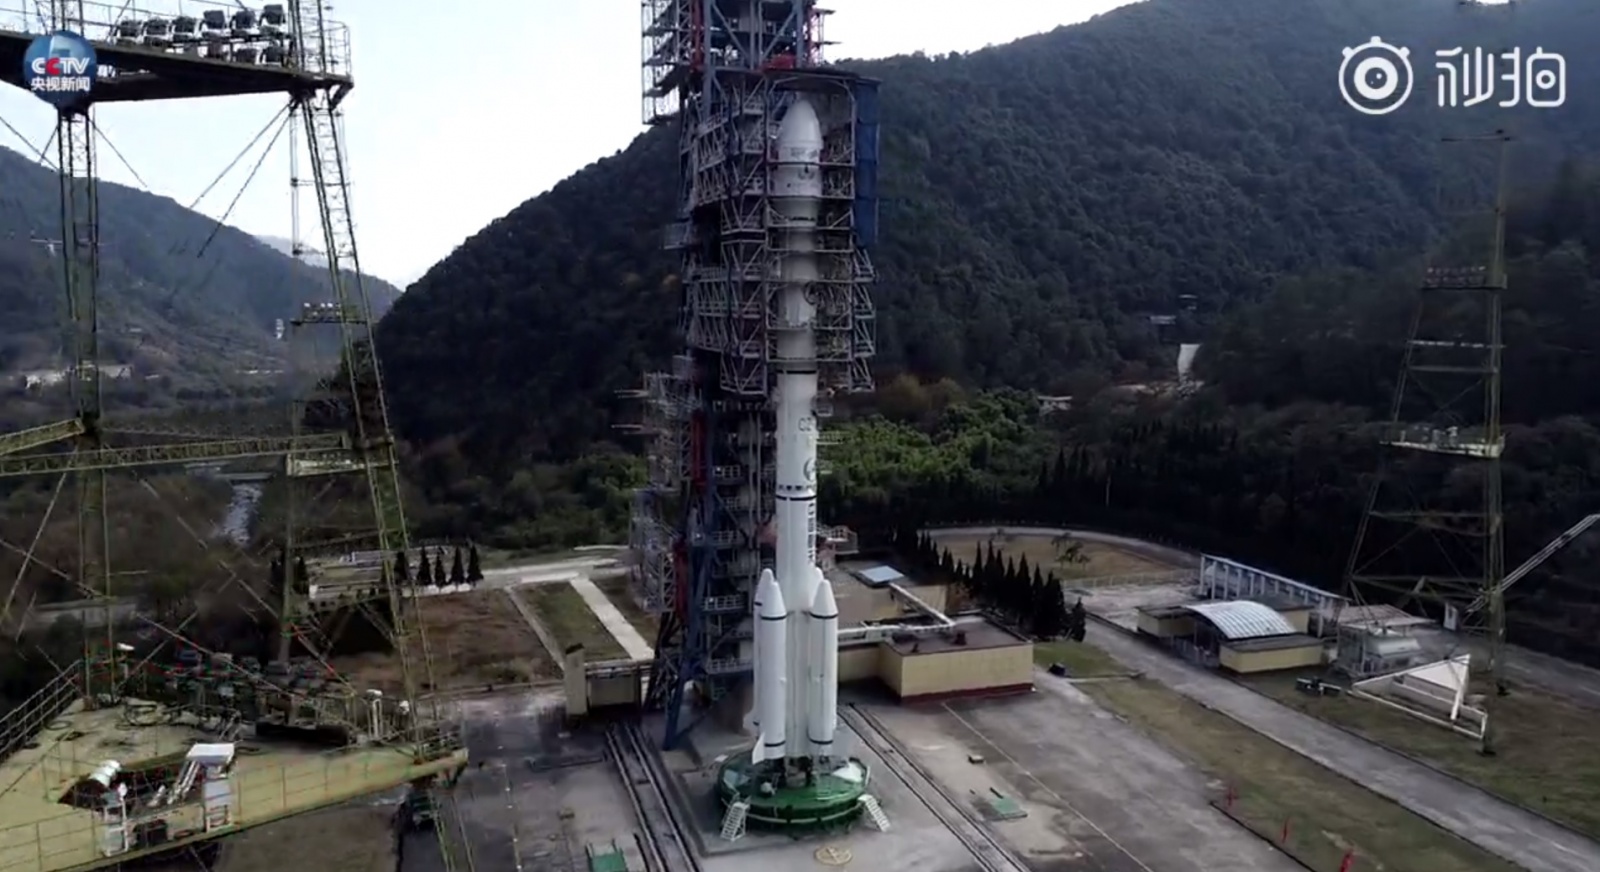 Суровая рабочая реальность — Китайский космодром Сичан (Xichang Satellite Launch Center — XSLC) - 1